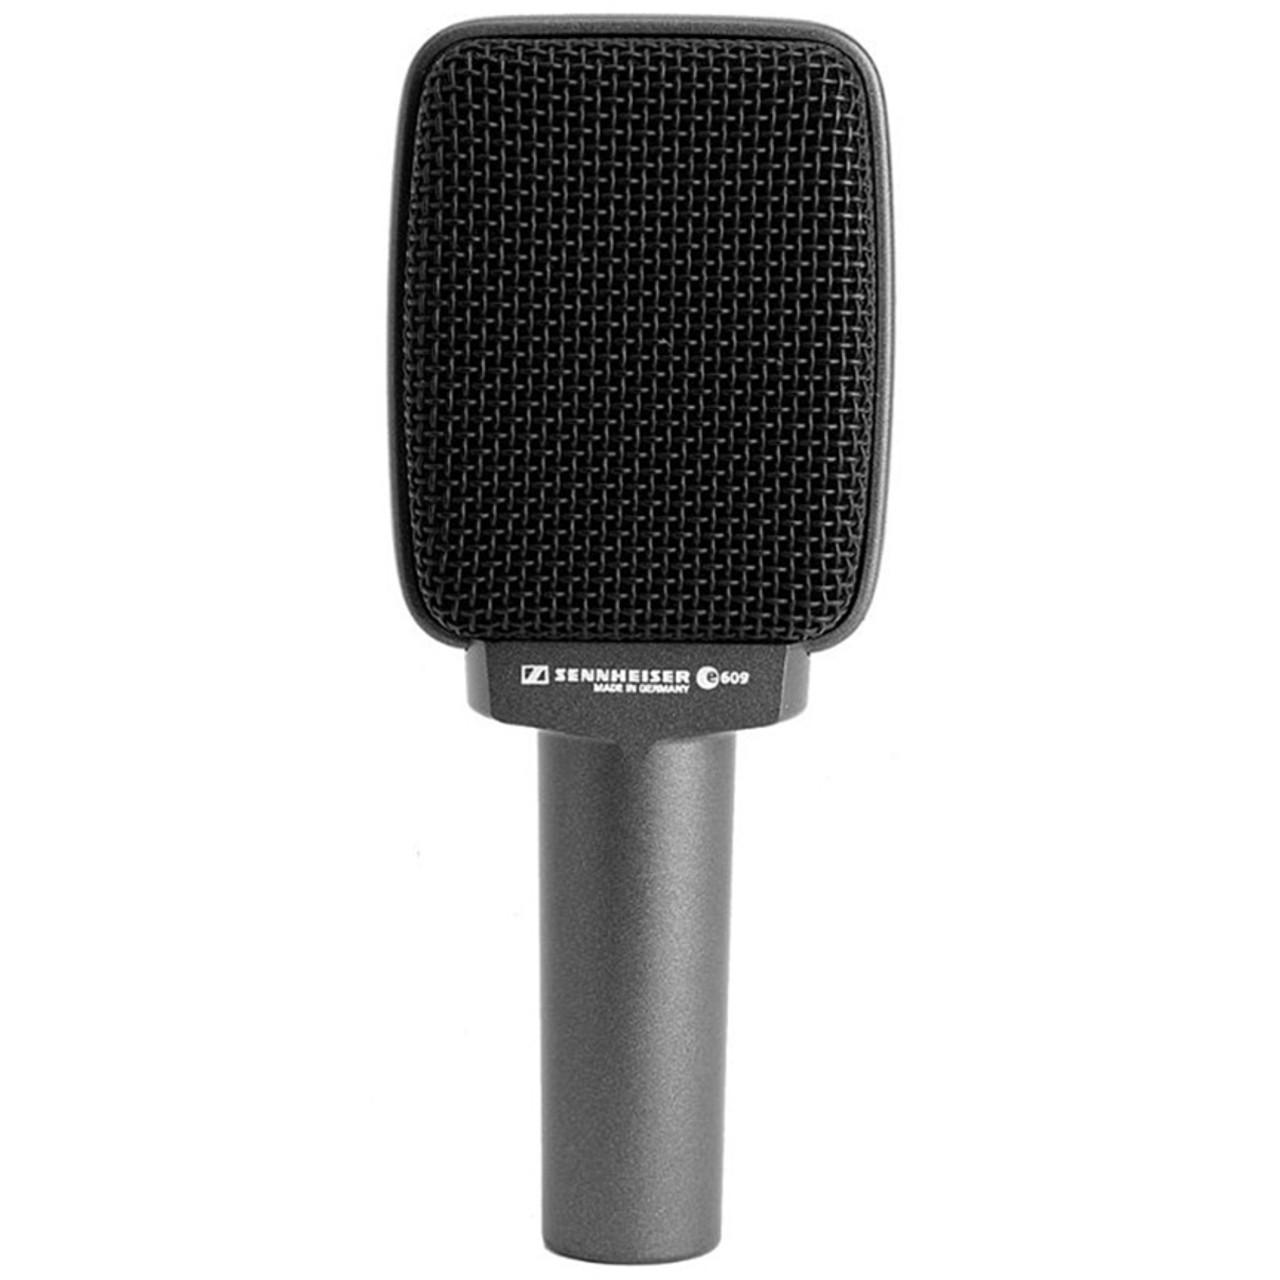 Sennheiser – Microphone dynamique supercardioïde pour instruments e609 